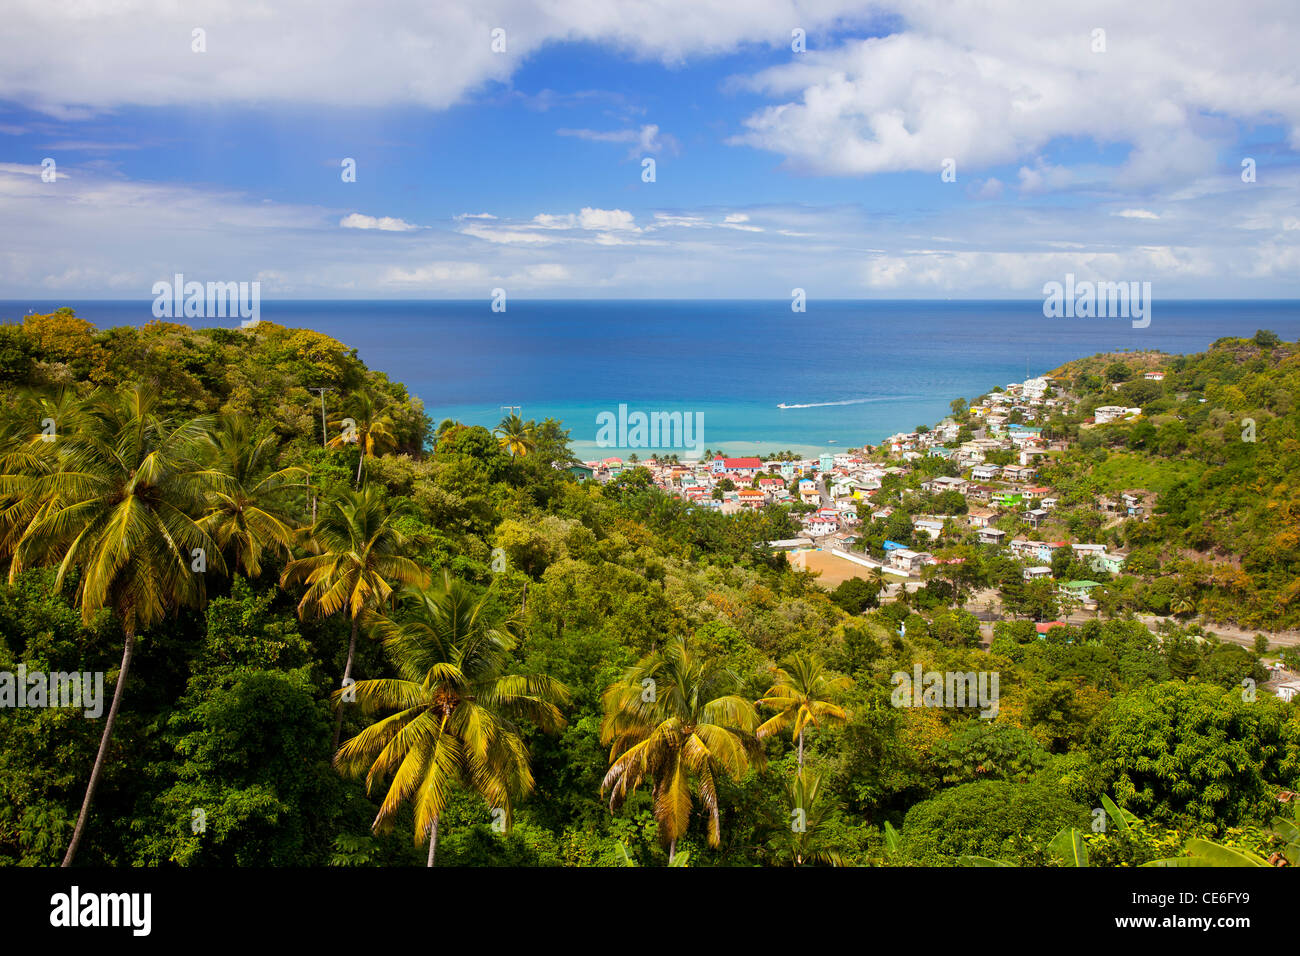 Vista su Canarie sull'isola caraibica di Santa Lucia, West Indies Foto Stock